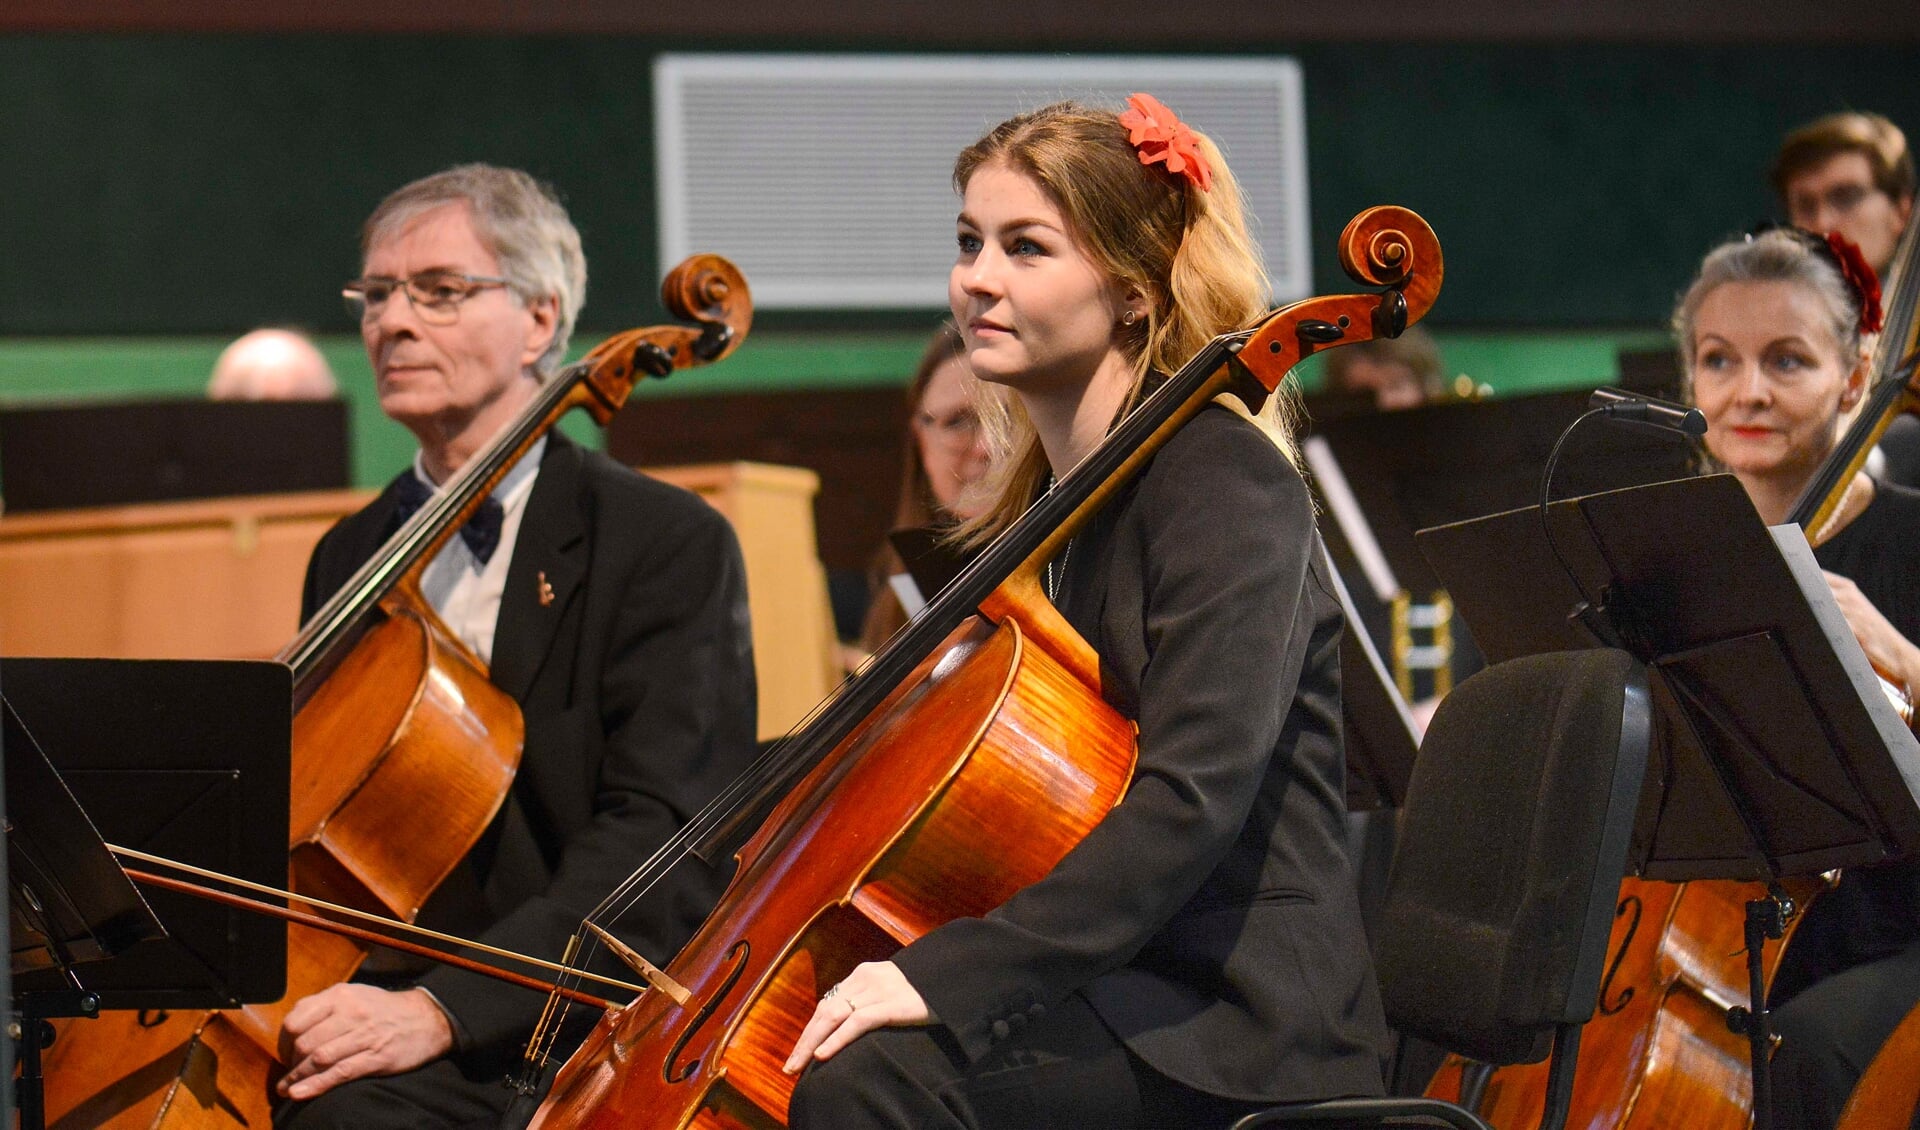 Lauseniana møder også op med yngre kræfter i orkestret. Fotos: